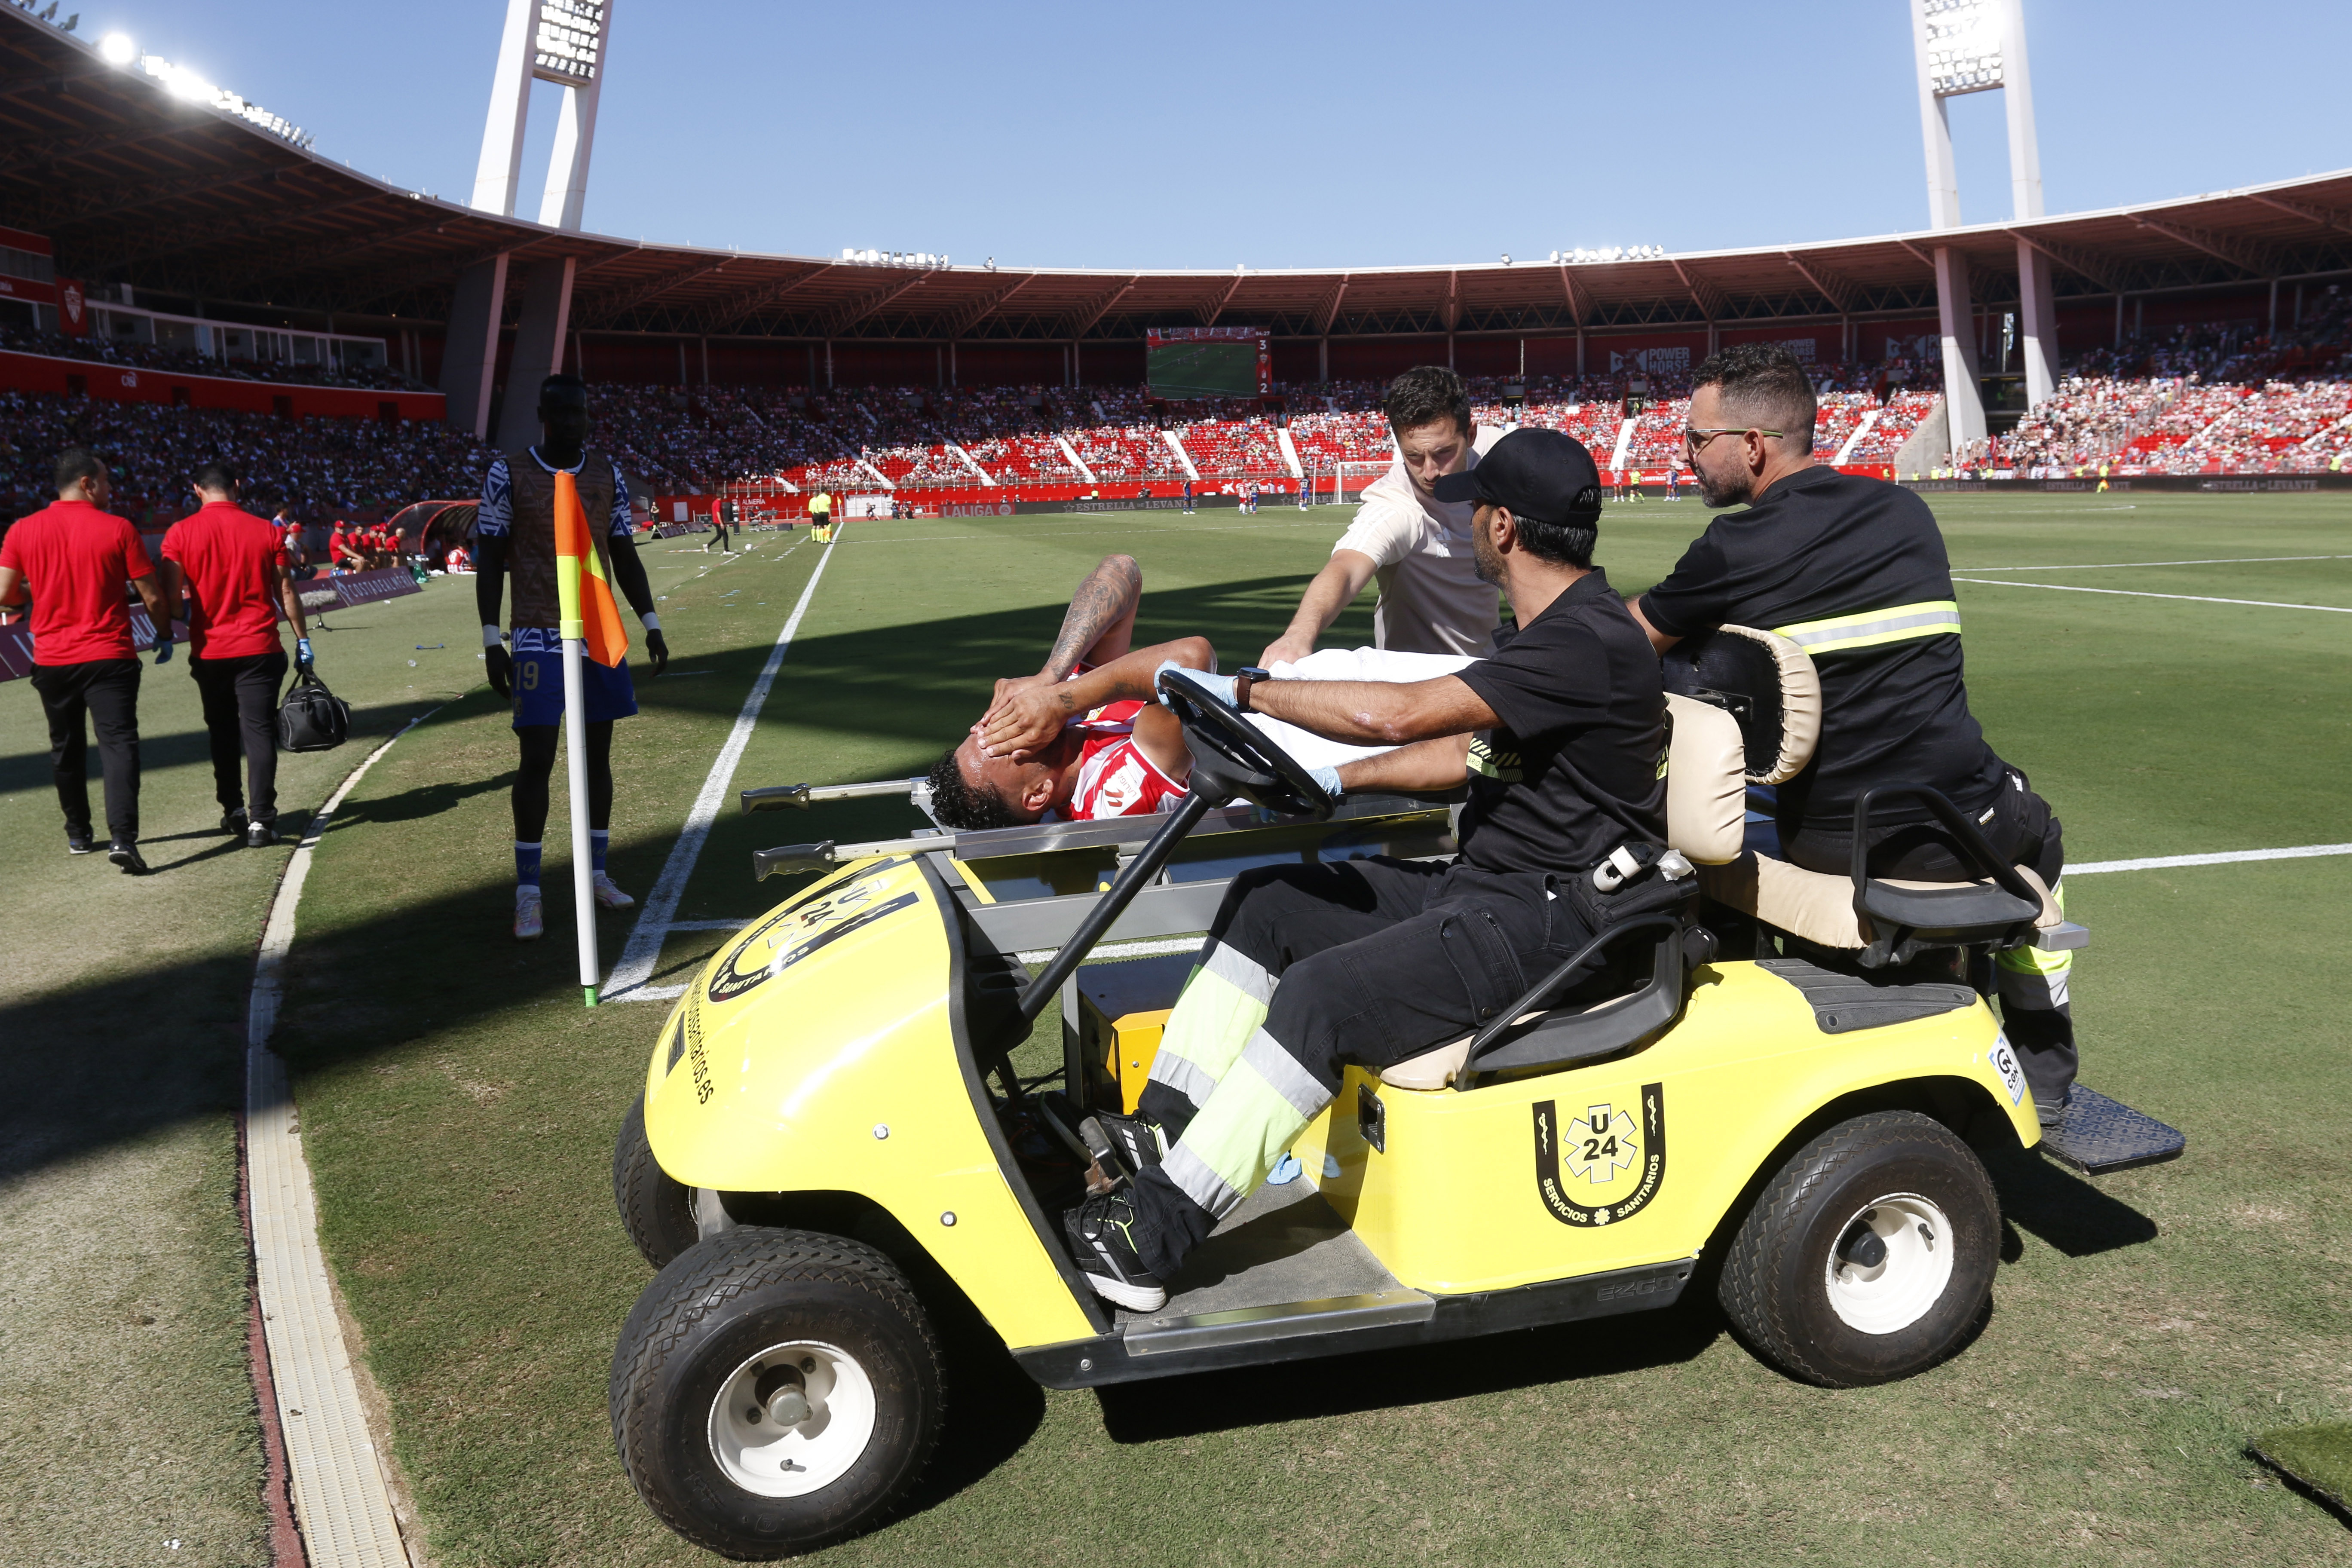 El jugador de la U.D. Almería, Luis Suárez, se retira lesionado durante el partido celebrado este domingo en Power Horse Stadium de Almería, correspondiente a la jornada 8 de LaLiga. (Foto Prensa Libre: EFE)